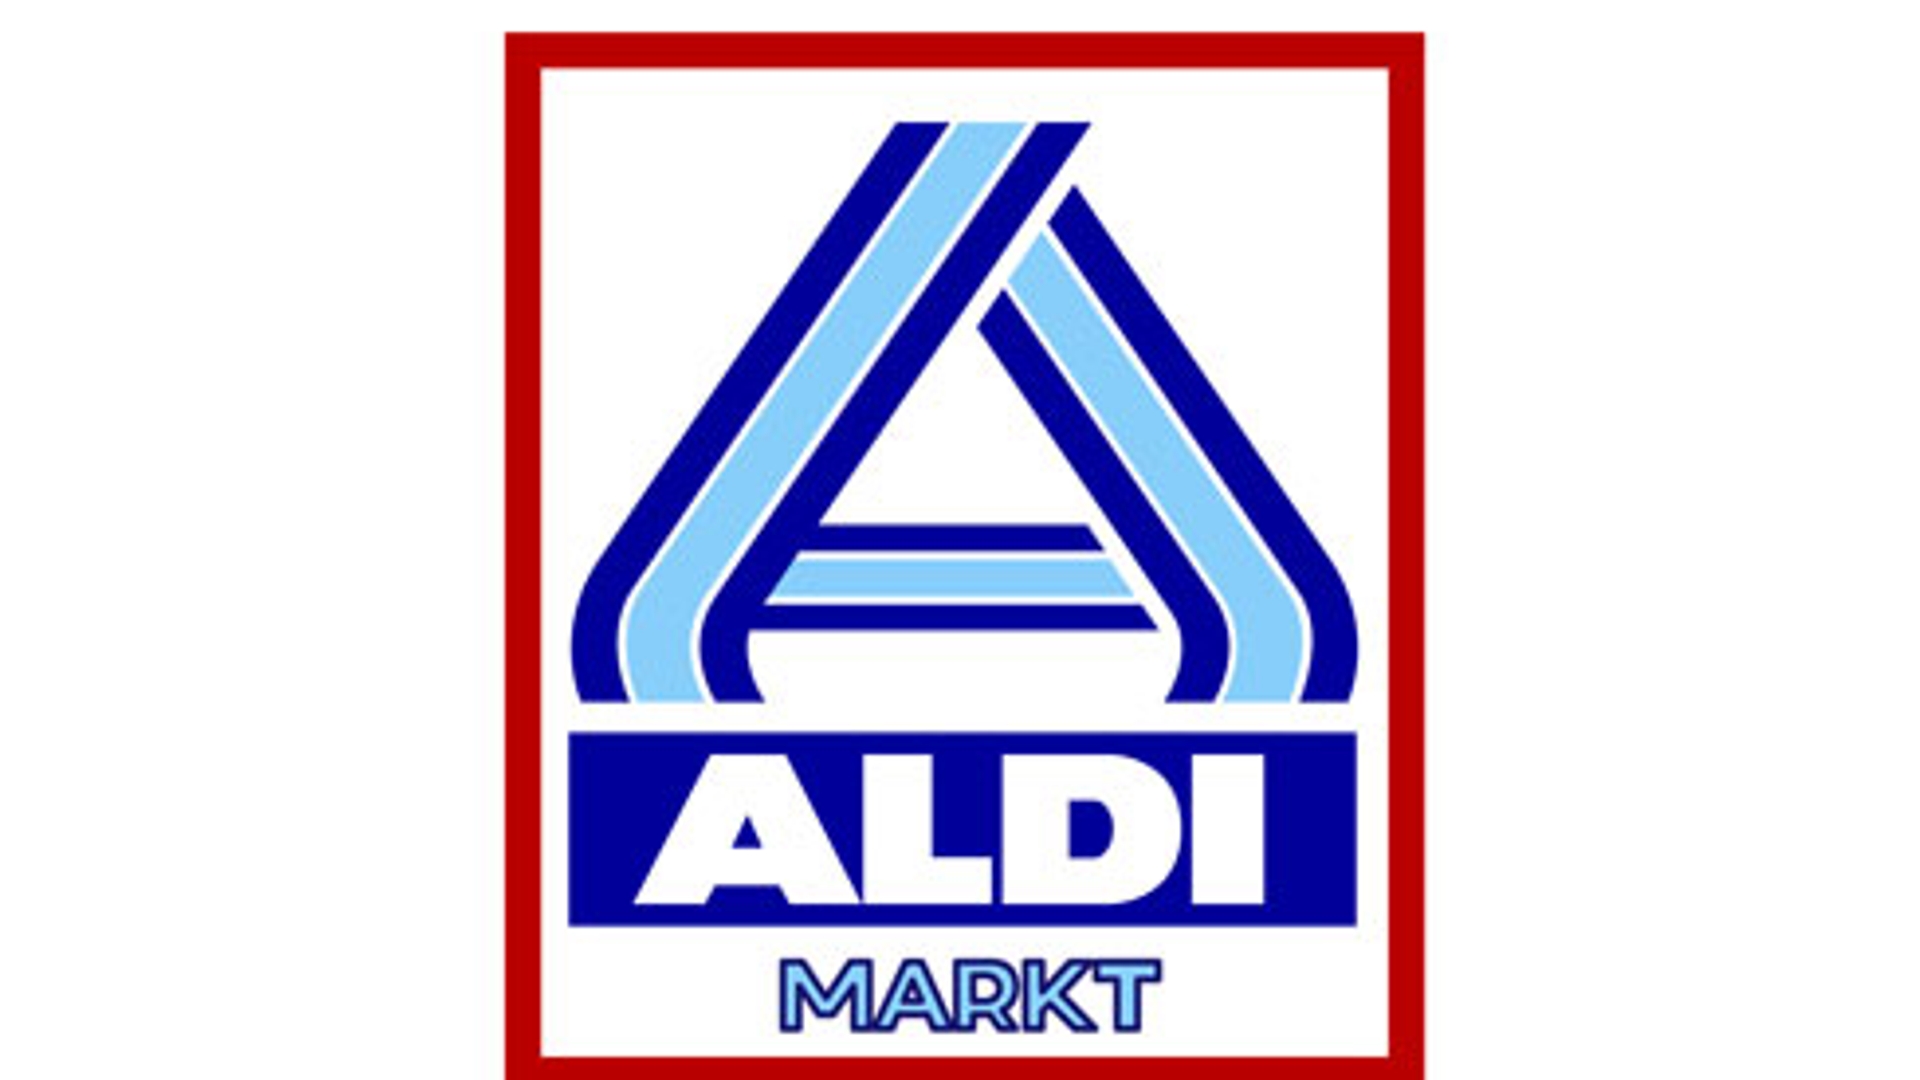 Aldi-logo_03.jpg